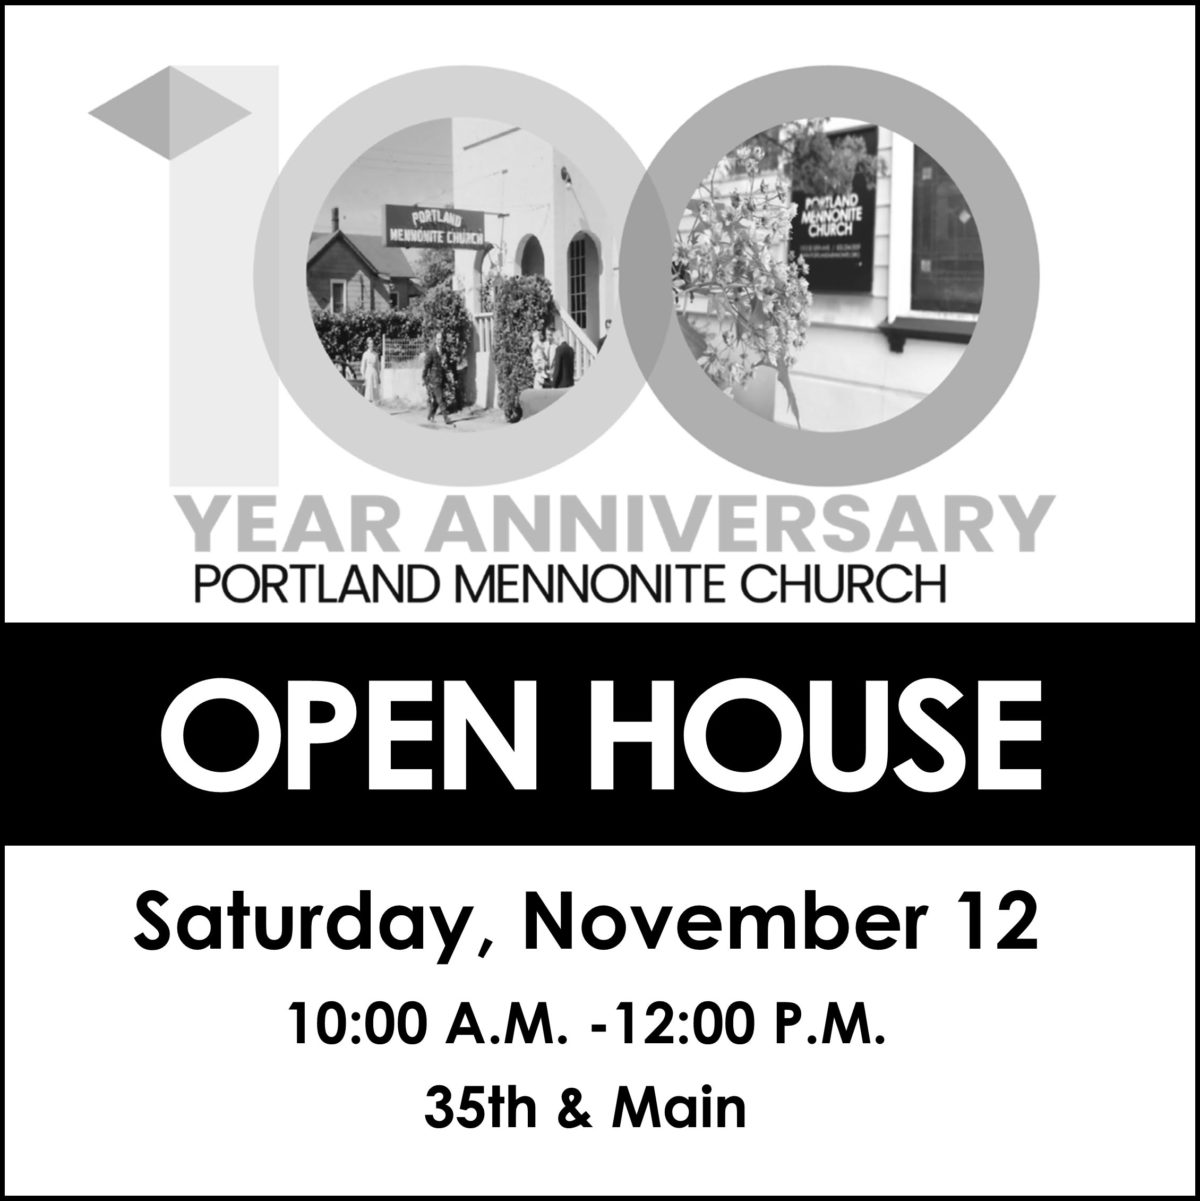 Portland Mennonite Church Celebrates 100th Anniversary